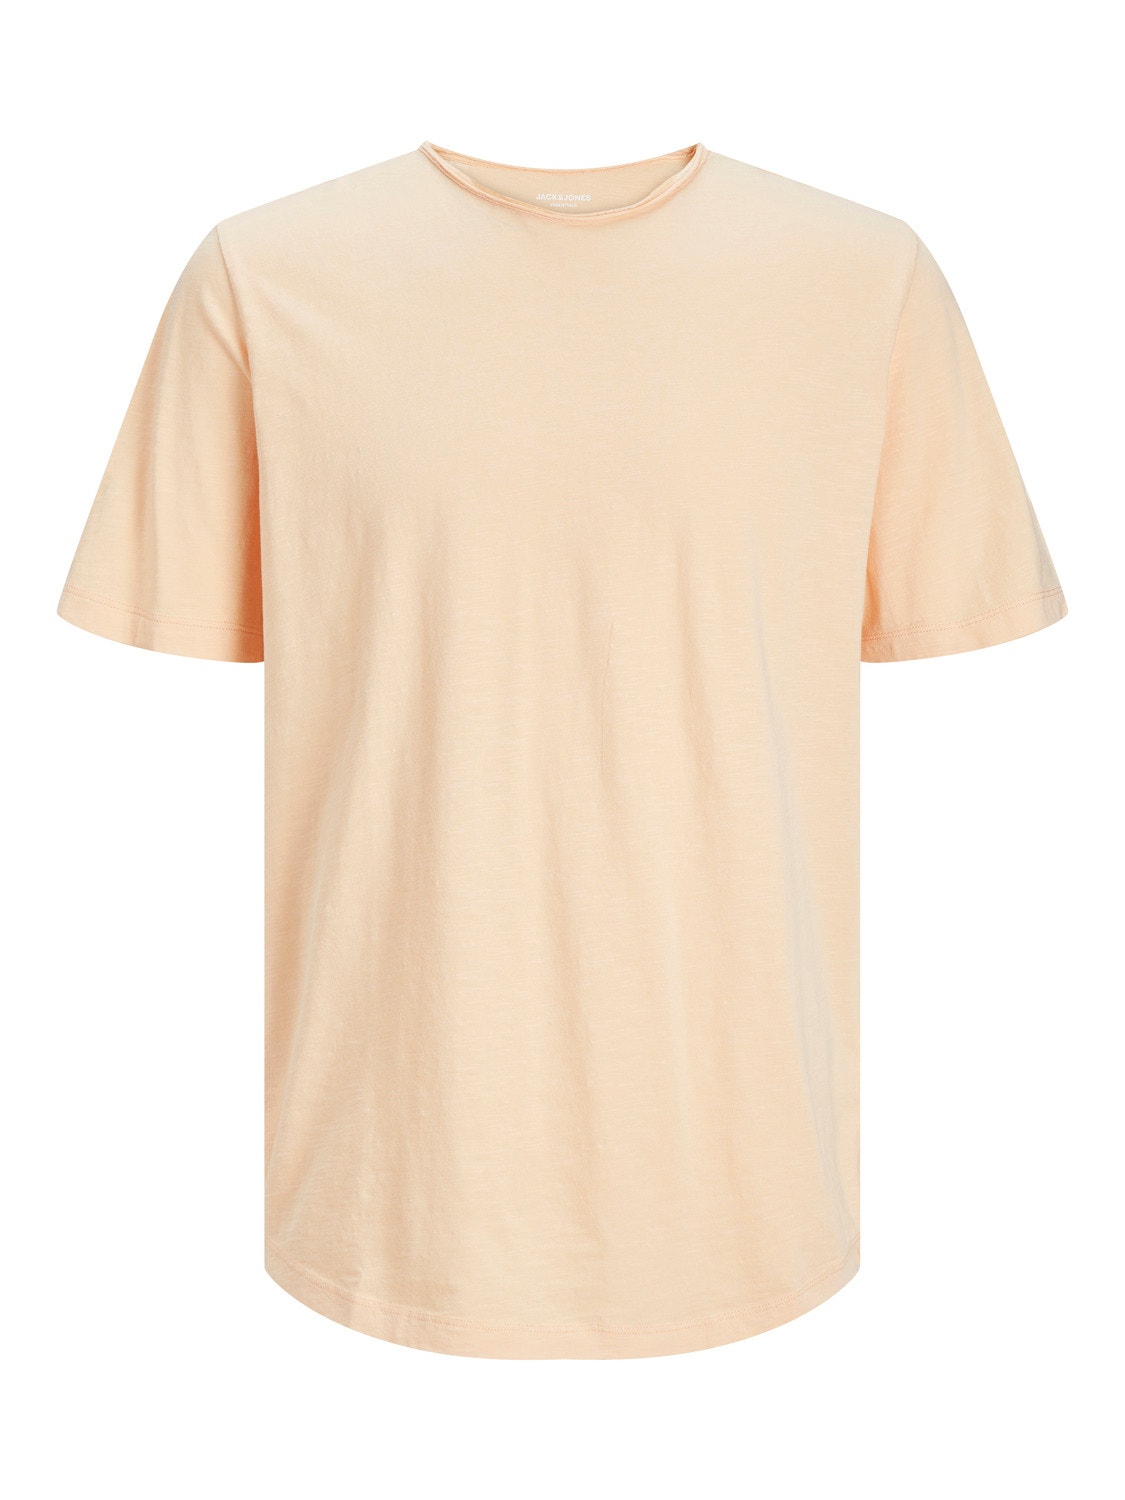 Jack & Jones Gładki Okrągły dekolt T-shirt -Apricot Ice  - 12182498